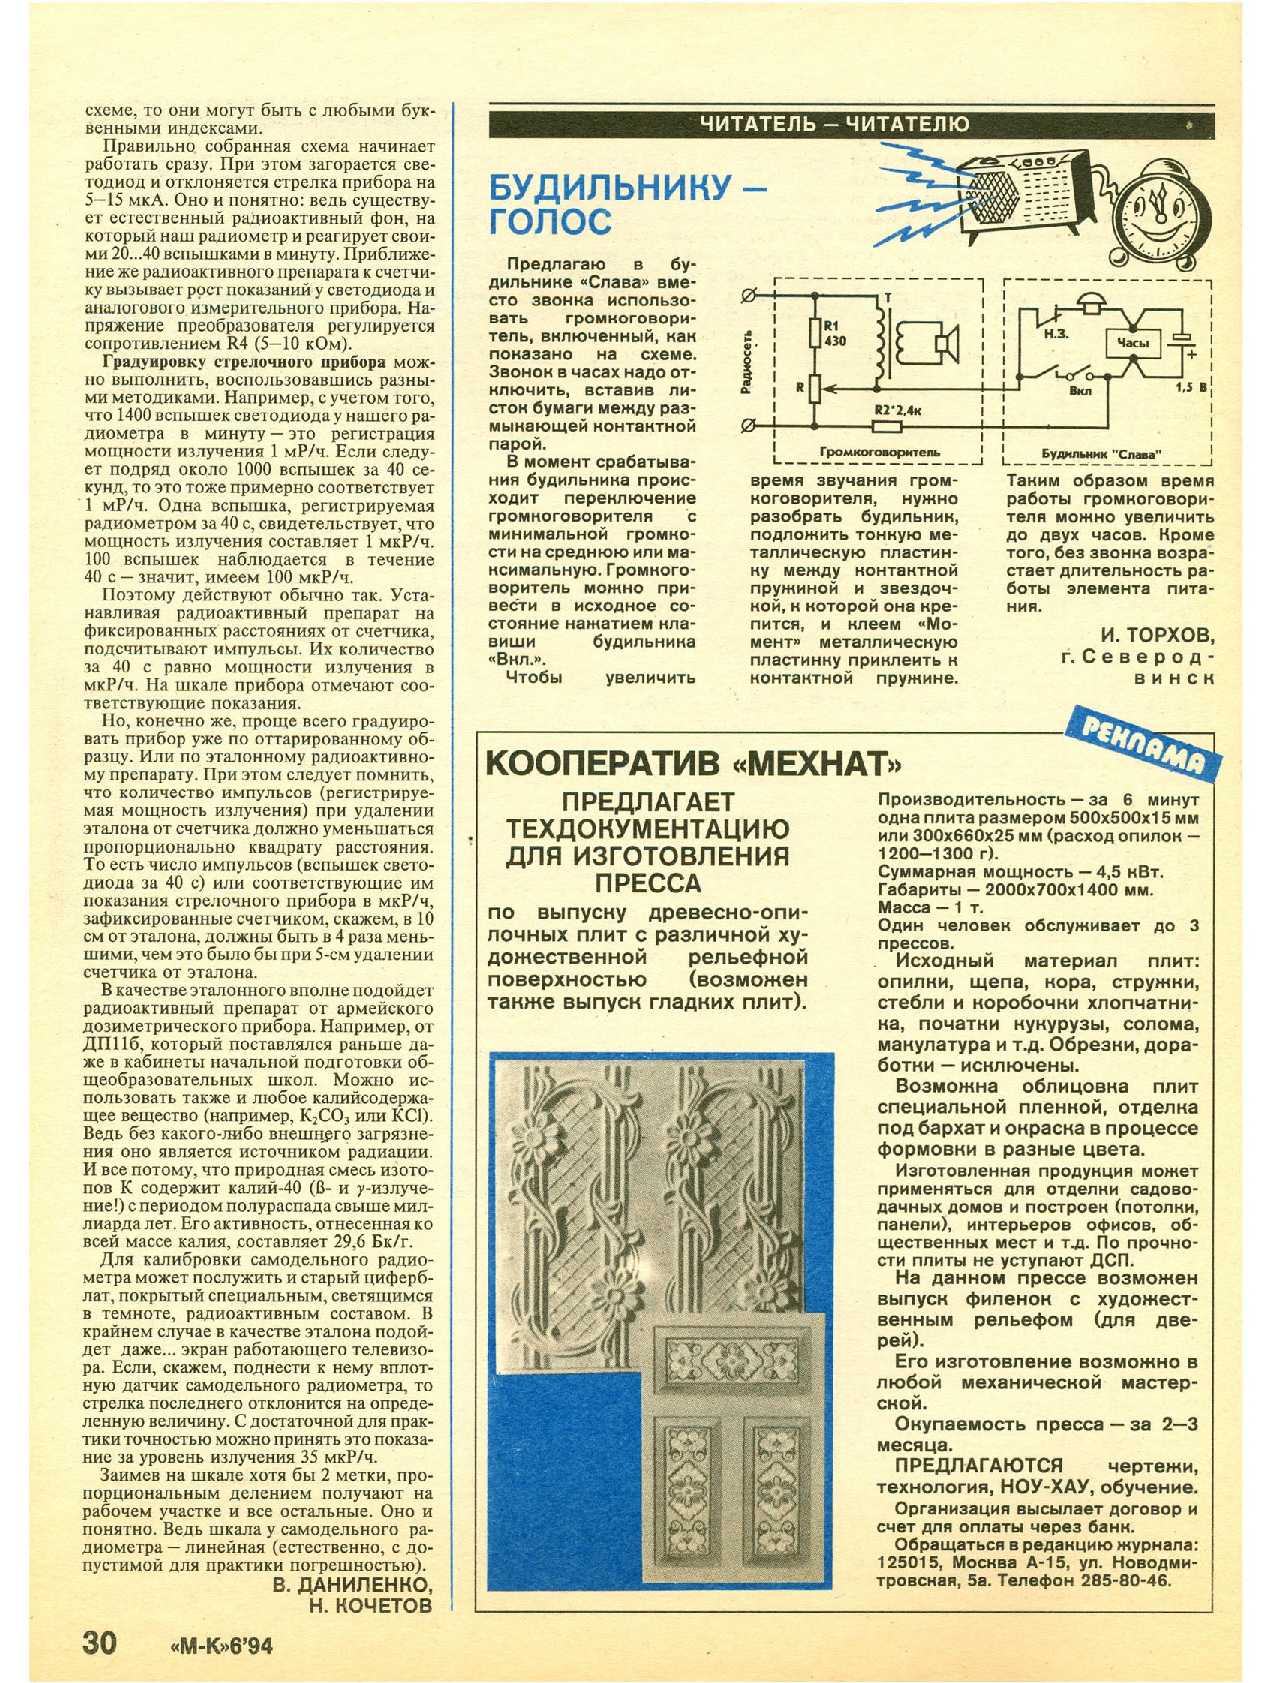 МК 6, 1994, 30 c.